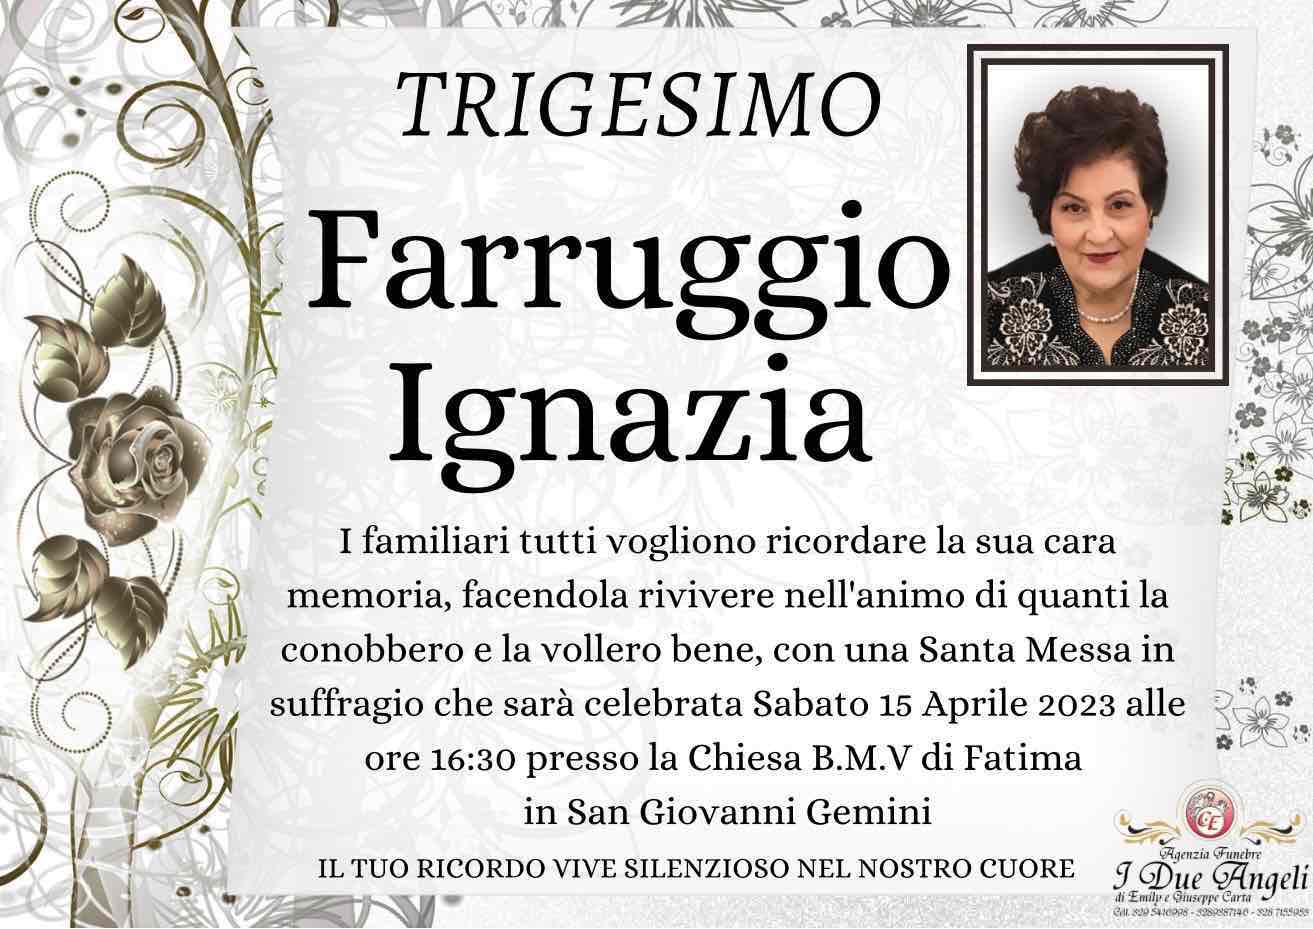 Ignazia Farruggio